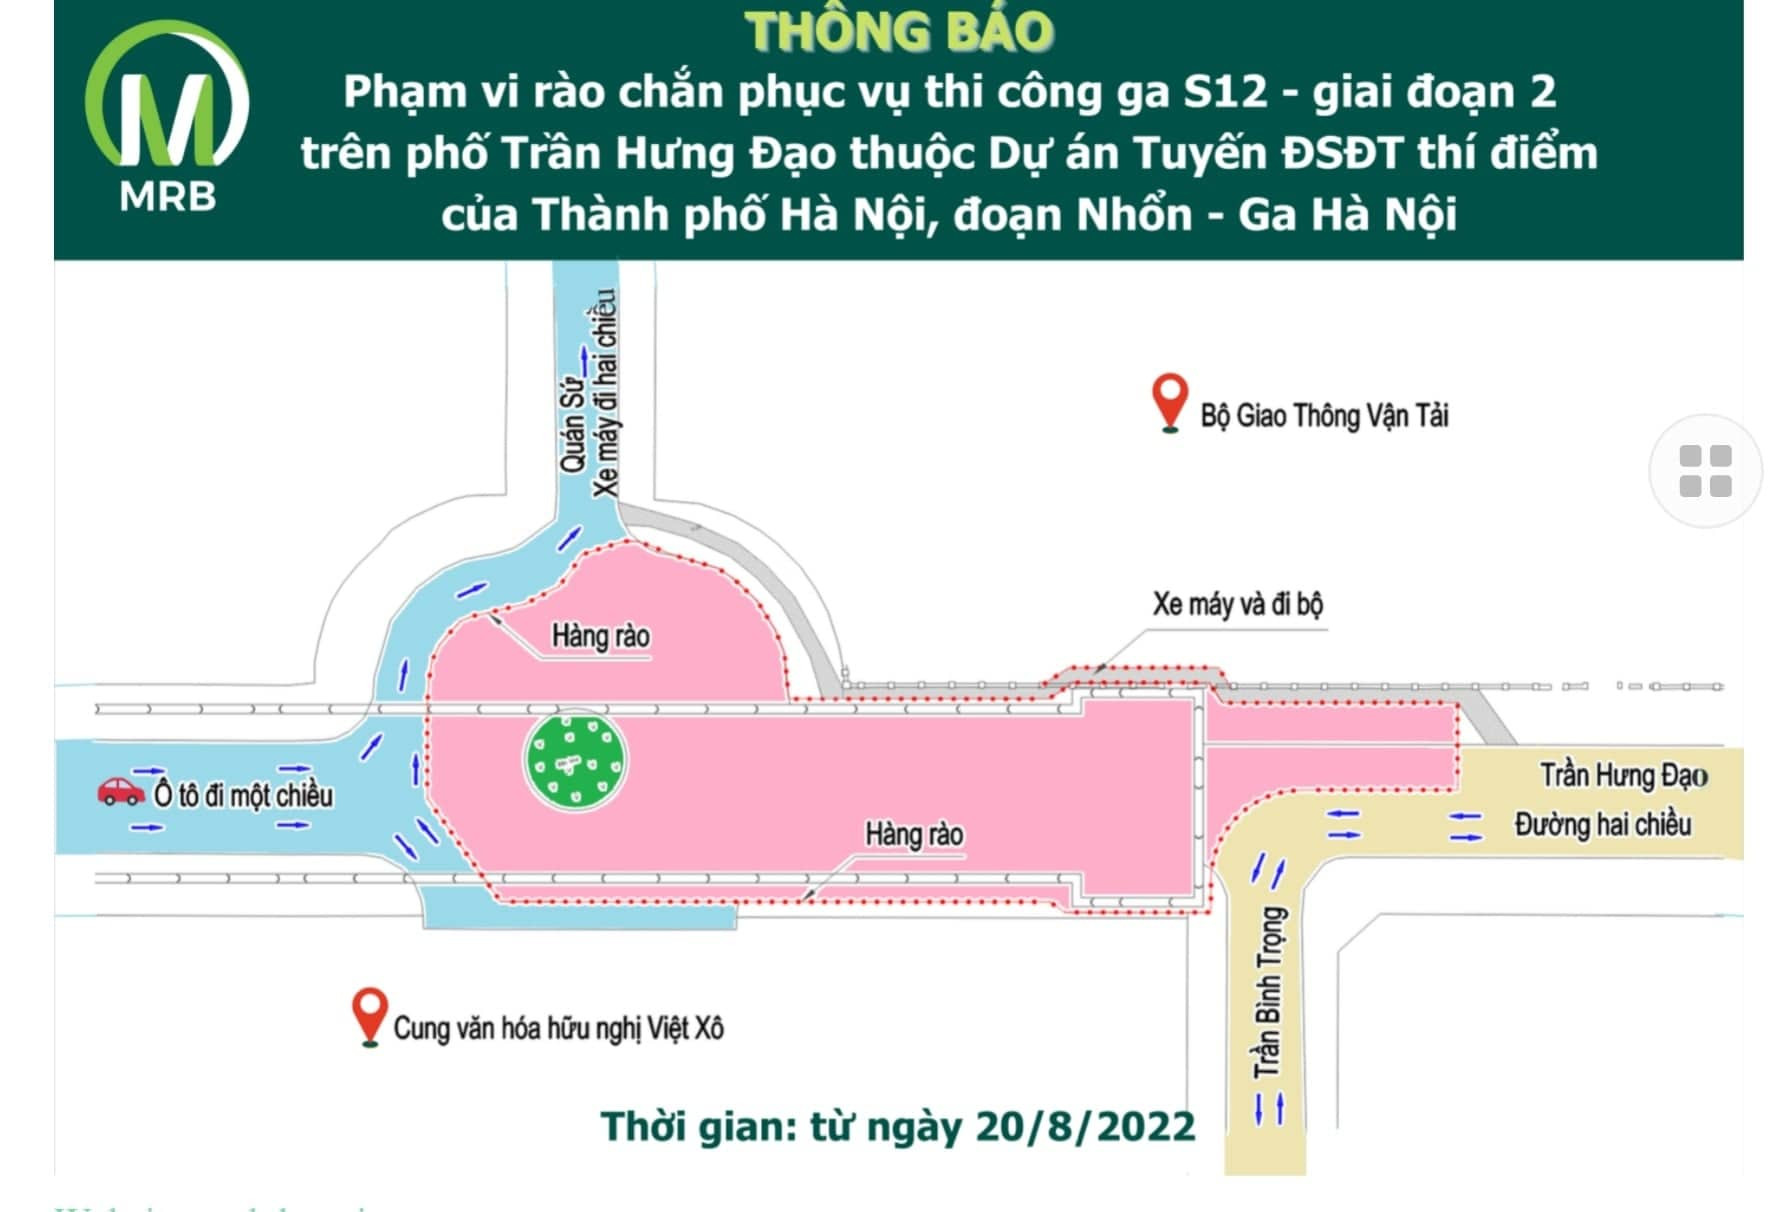 Sẽ rào đường Trần Hưng Đạo thi công nhà ga Đường sắt Nhổn - ga Hà Nội